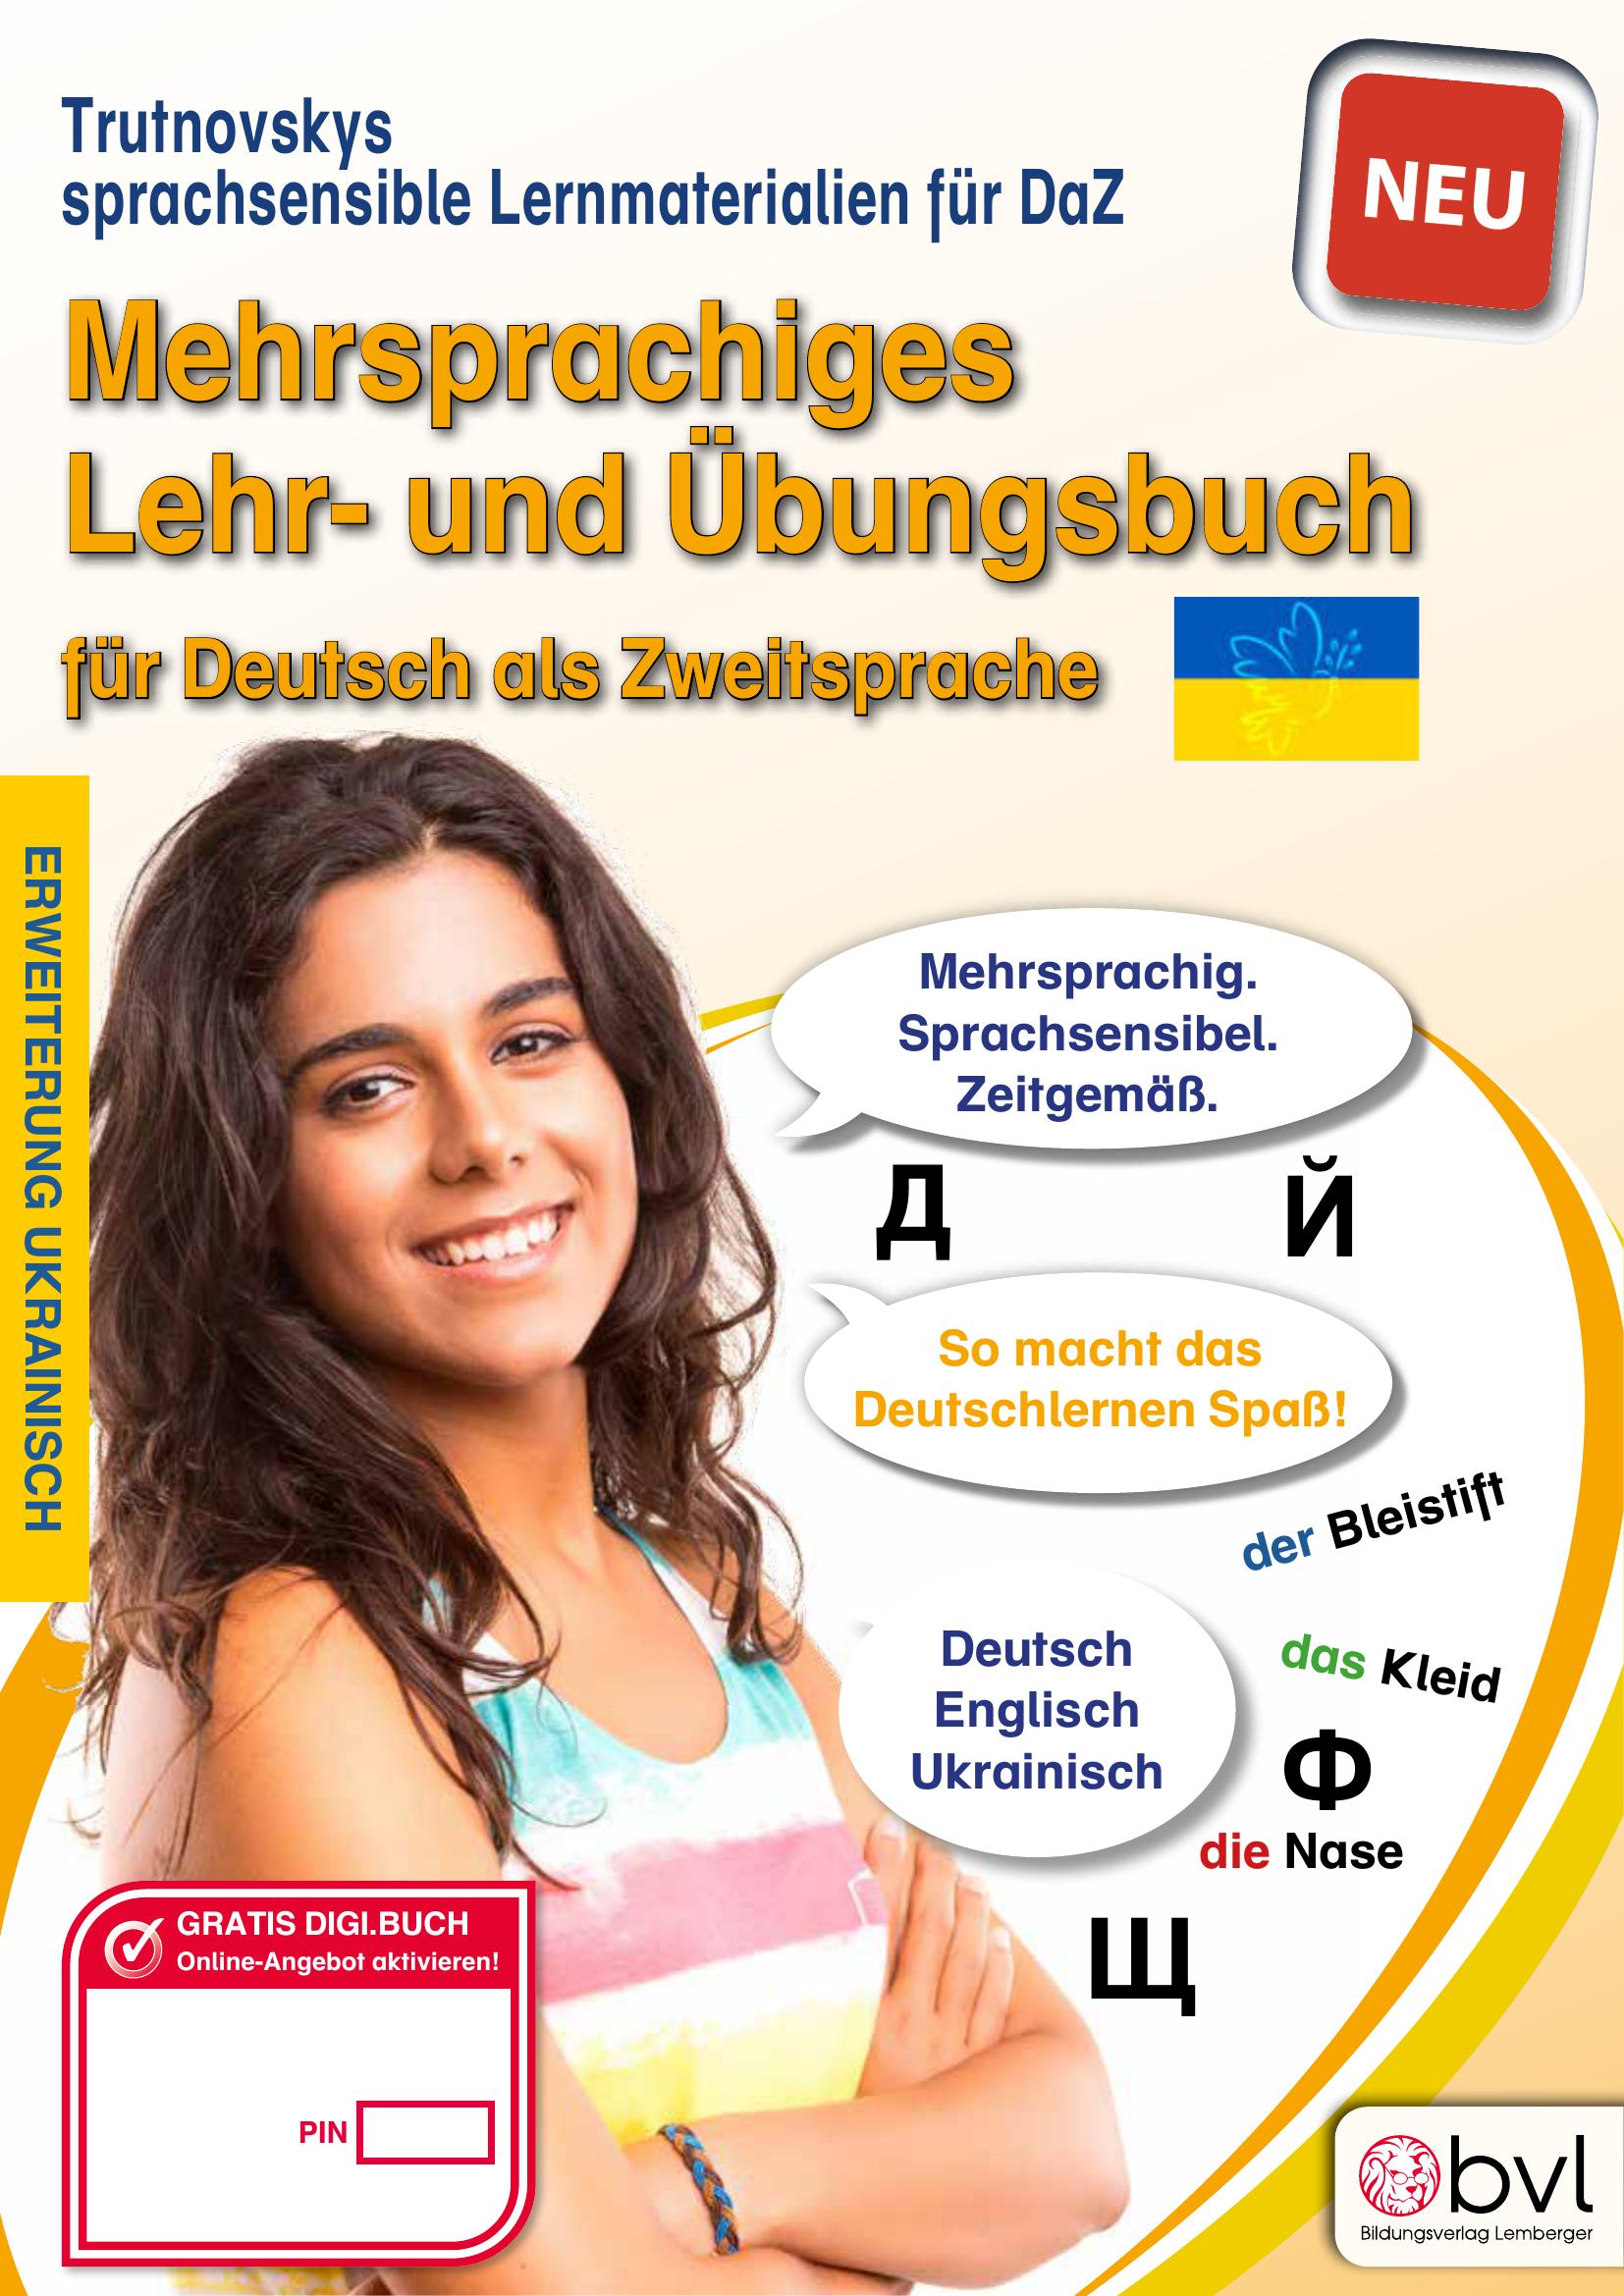 Trutnovskys sprachsensible Lernmaterialien für DaZ – Mehrsprachiges Lehrbuch für Deutsch als Zweitsprache / Erweiterung Ukrainisch